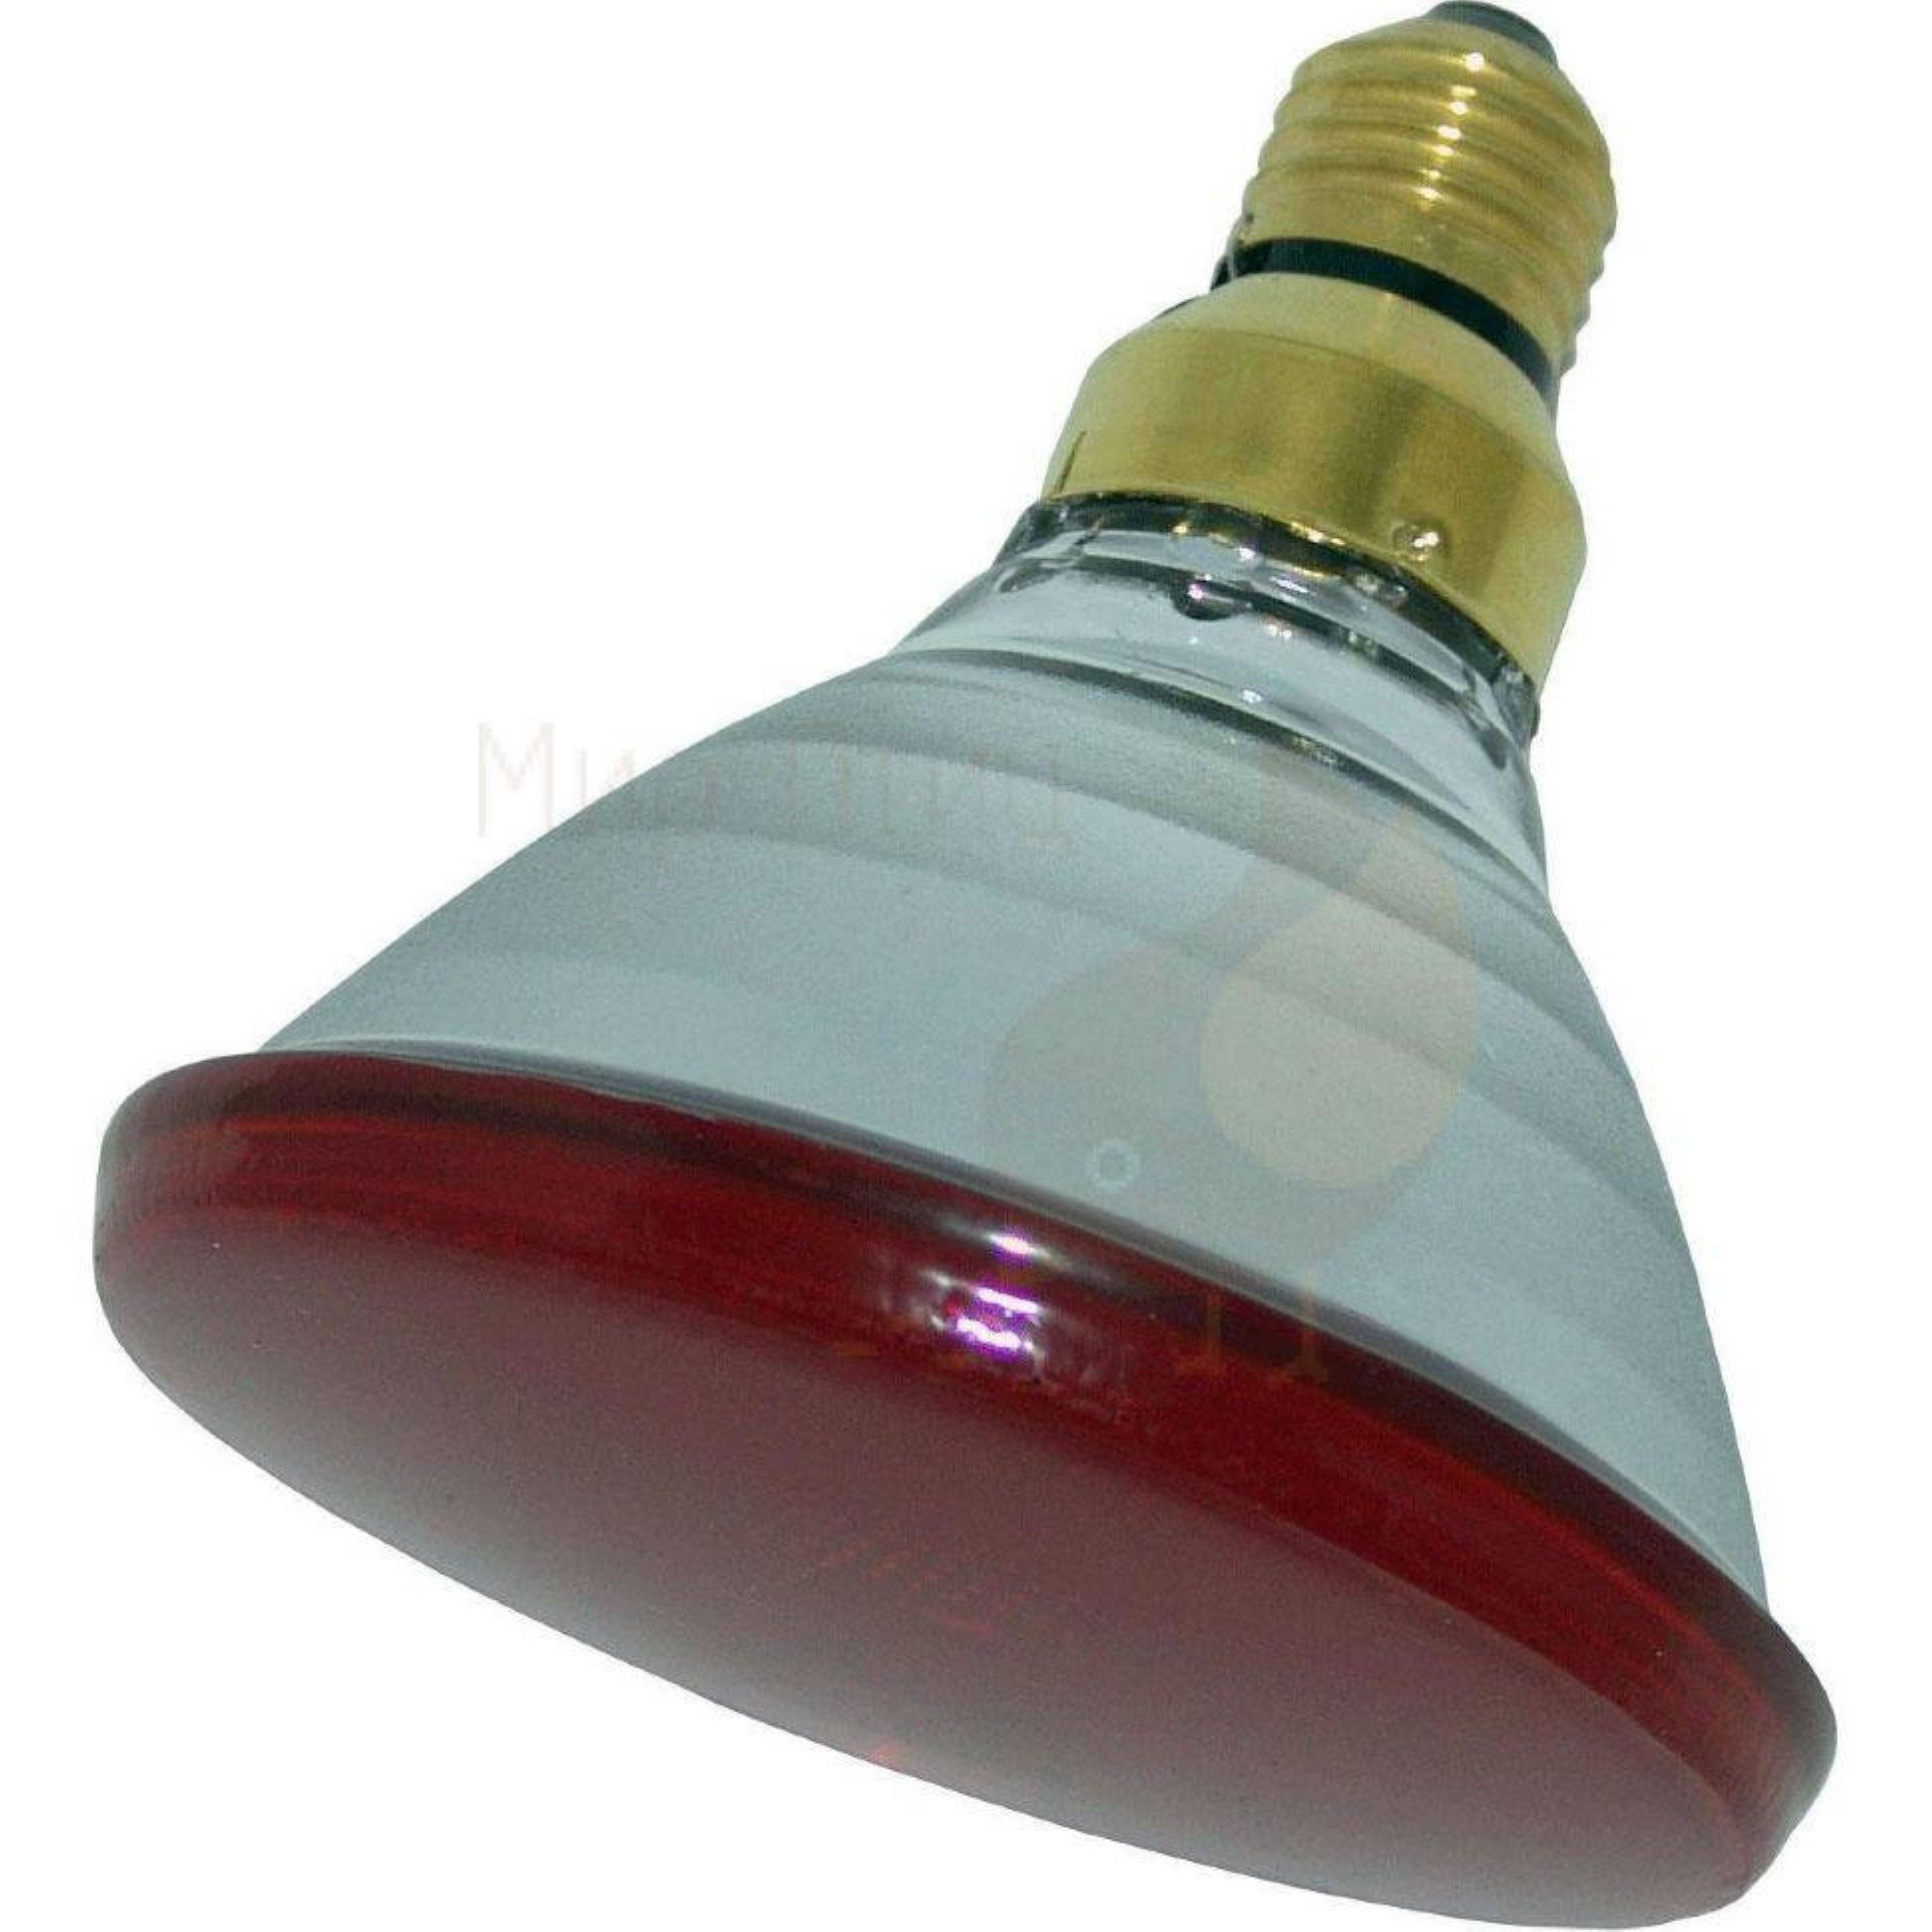 Инфракрасная лампа для обогрева курятника: инструкция по использованию, виды